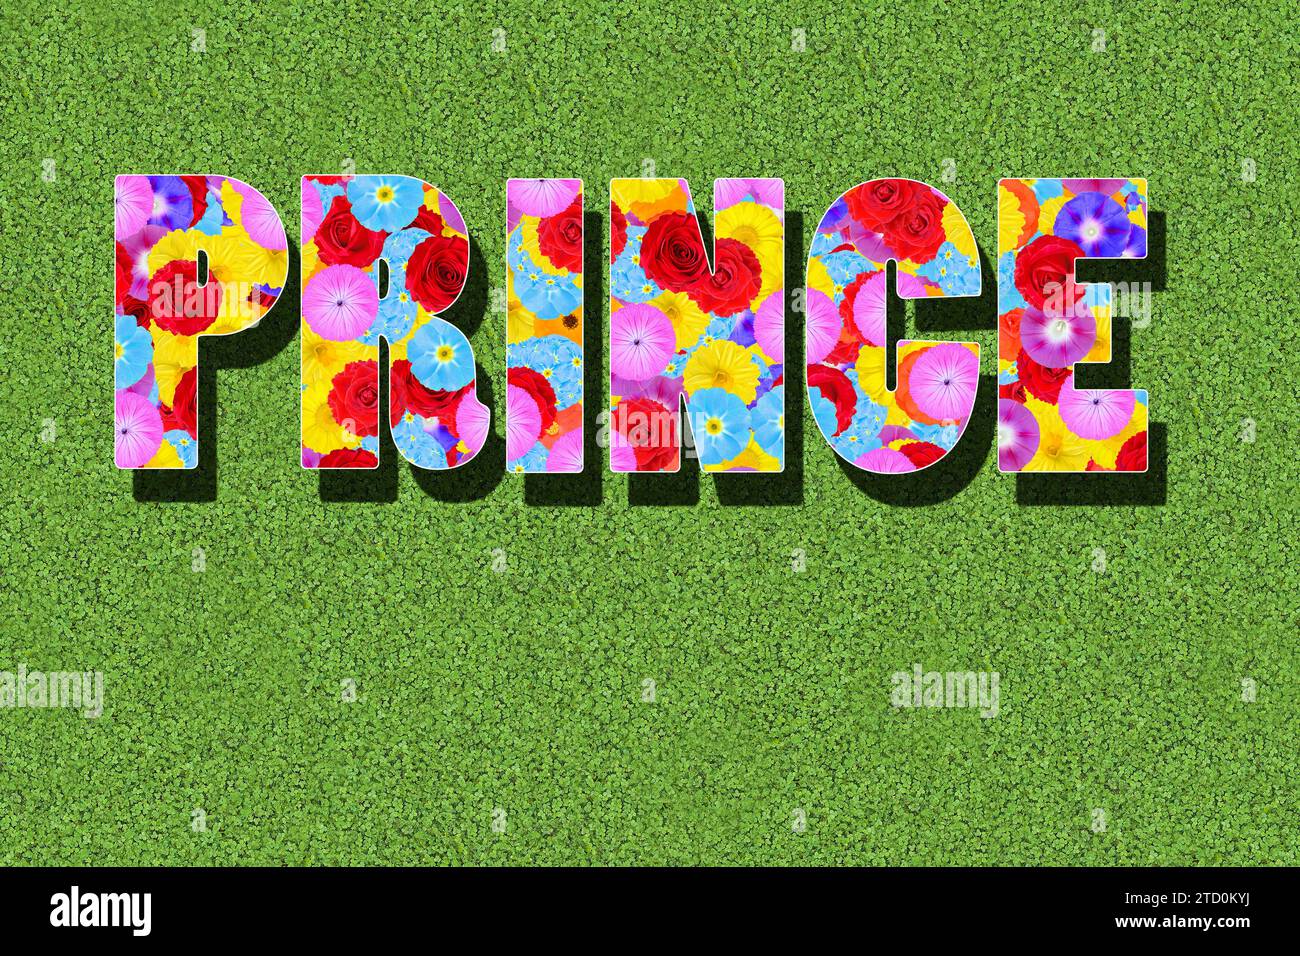 Das englische Wort Prinz, Wort geschrieben mit bunten Blumen auf grünem Hintergrund, Wiese, Grafik, Text Stockfoto